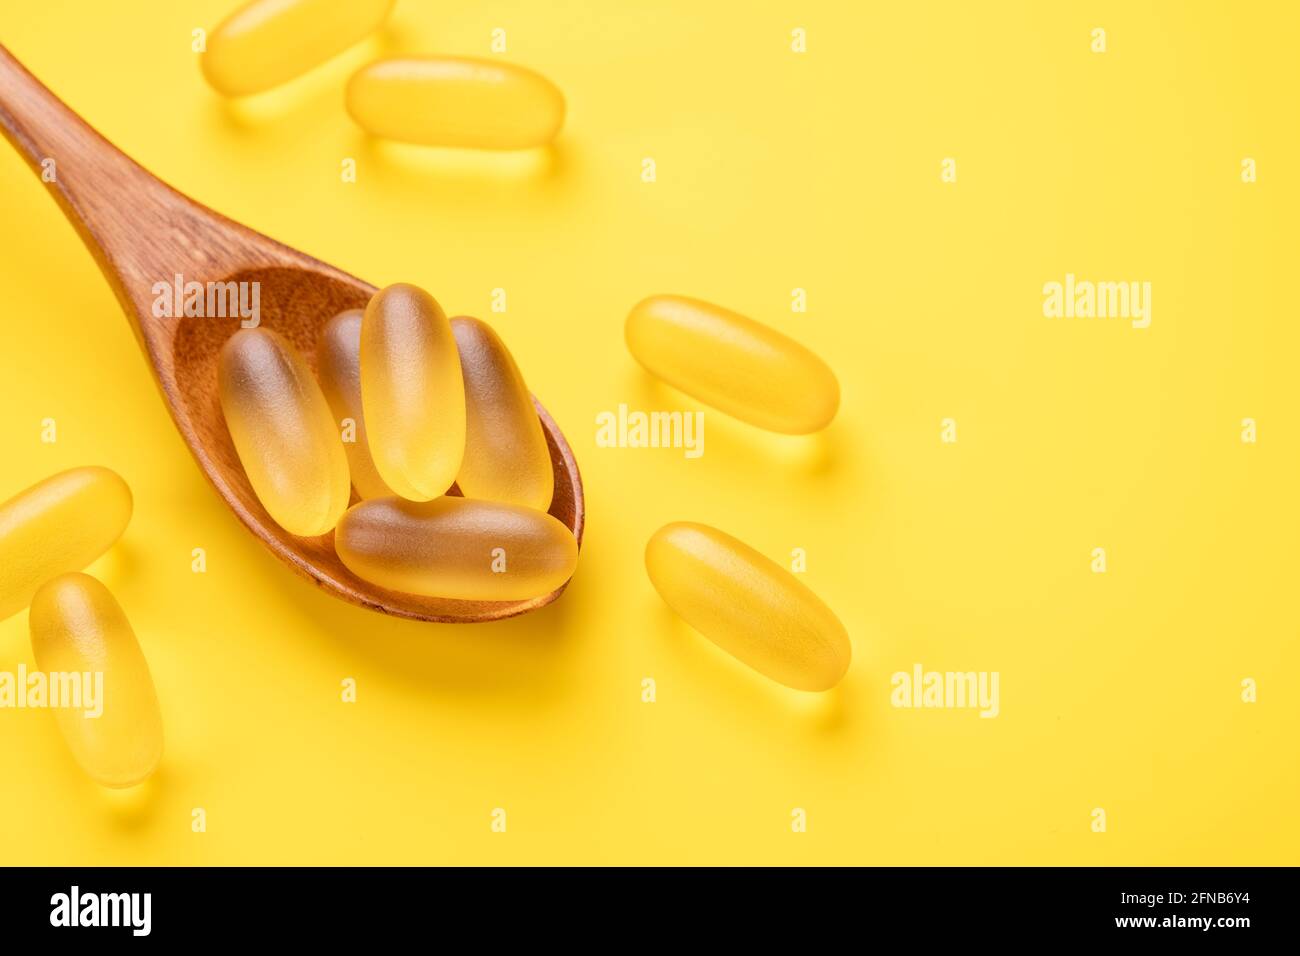 Cuillère en bois avec pilules Omega 3 sur fond jaune. Compléments alimentaires en capsules de vitamine D. Vue de dessus. Espace de copie - image Banque D'Images